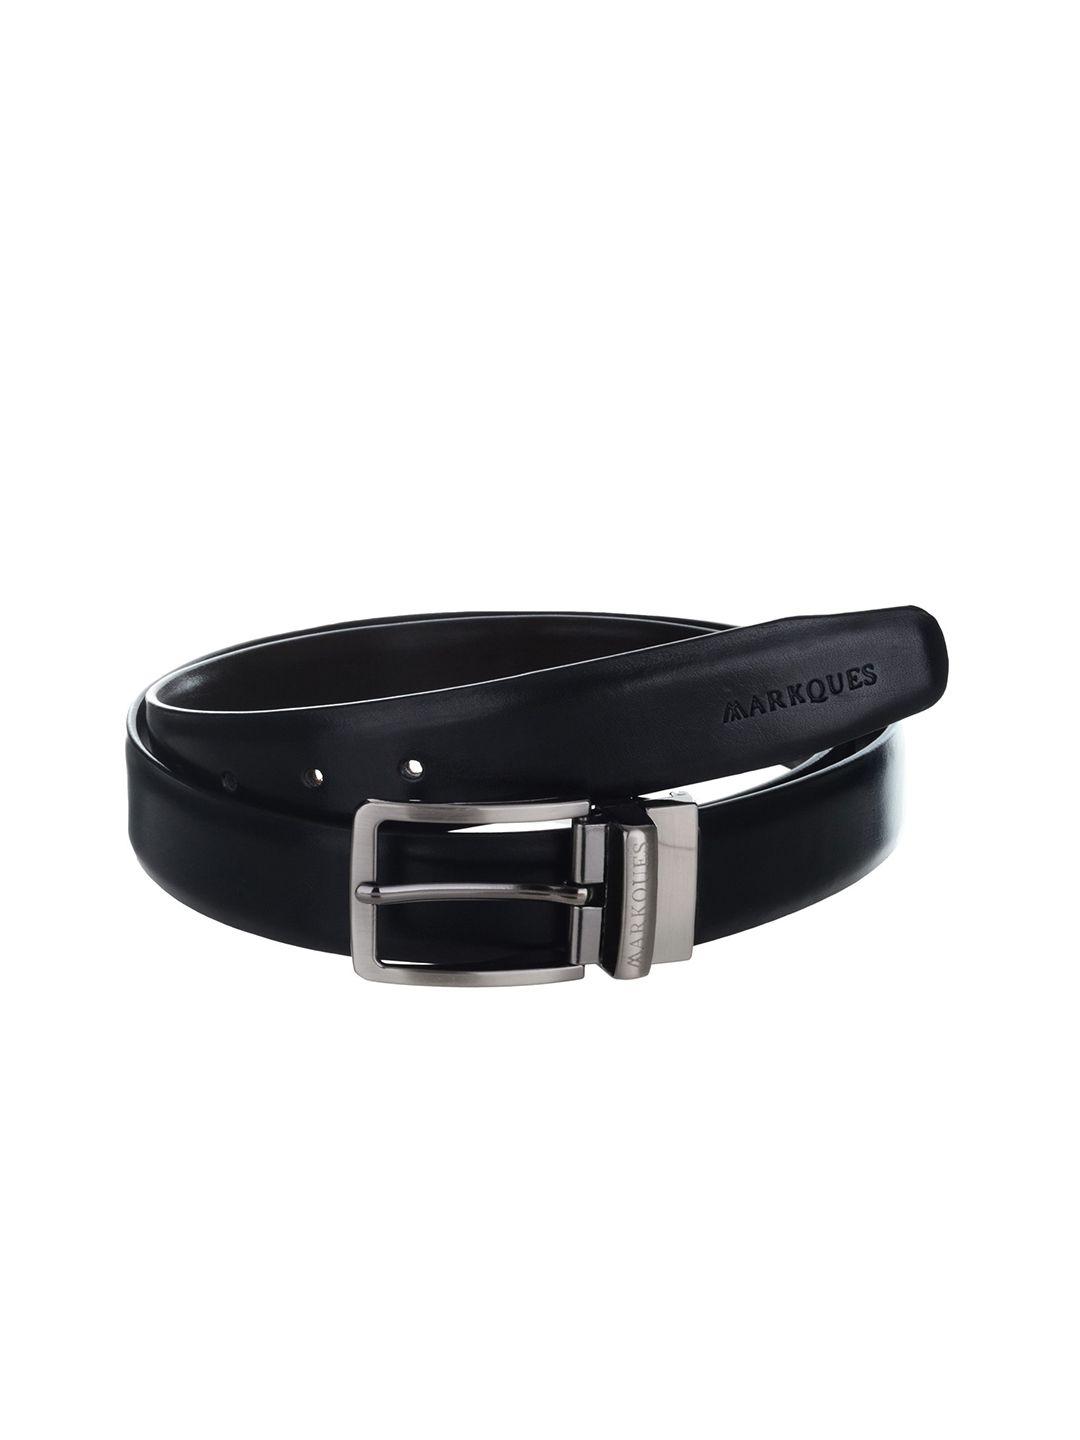 markques men vegan leather reversible stretchable belt